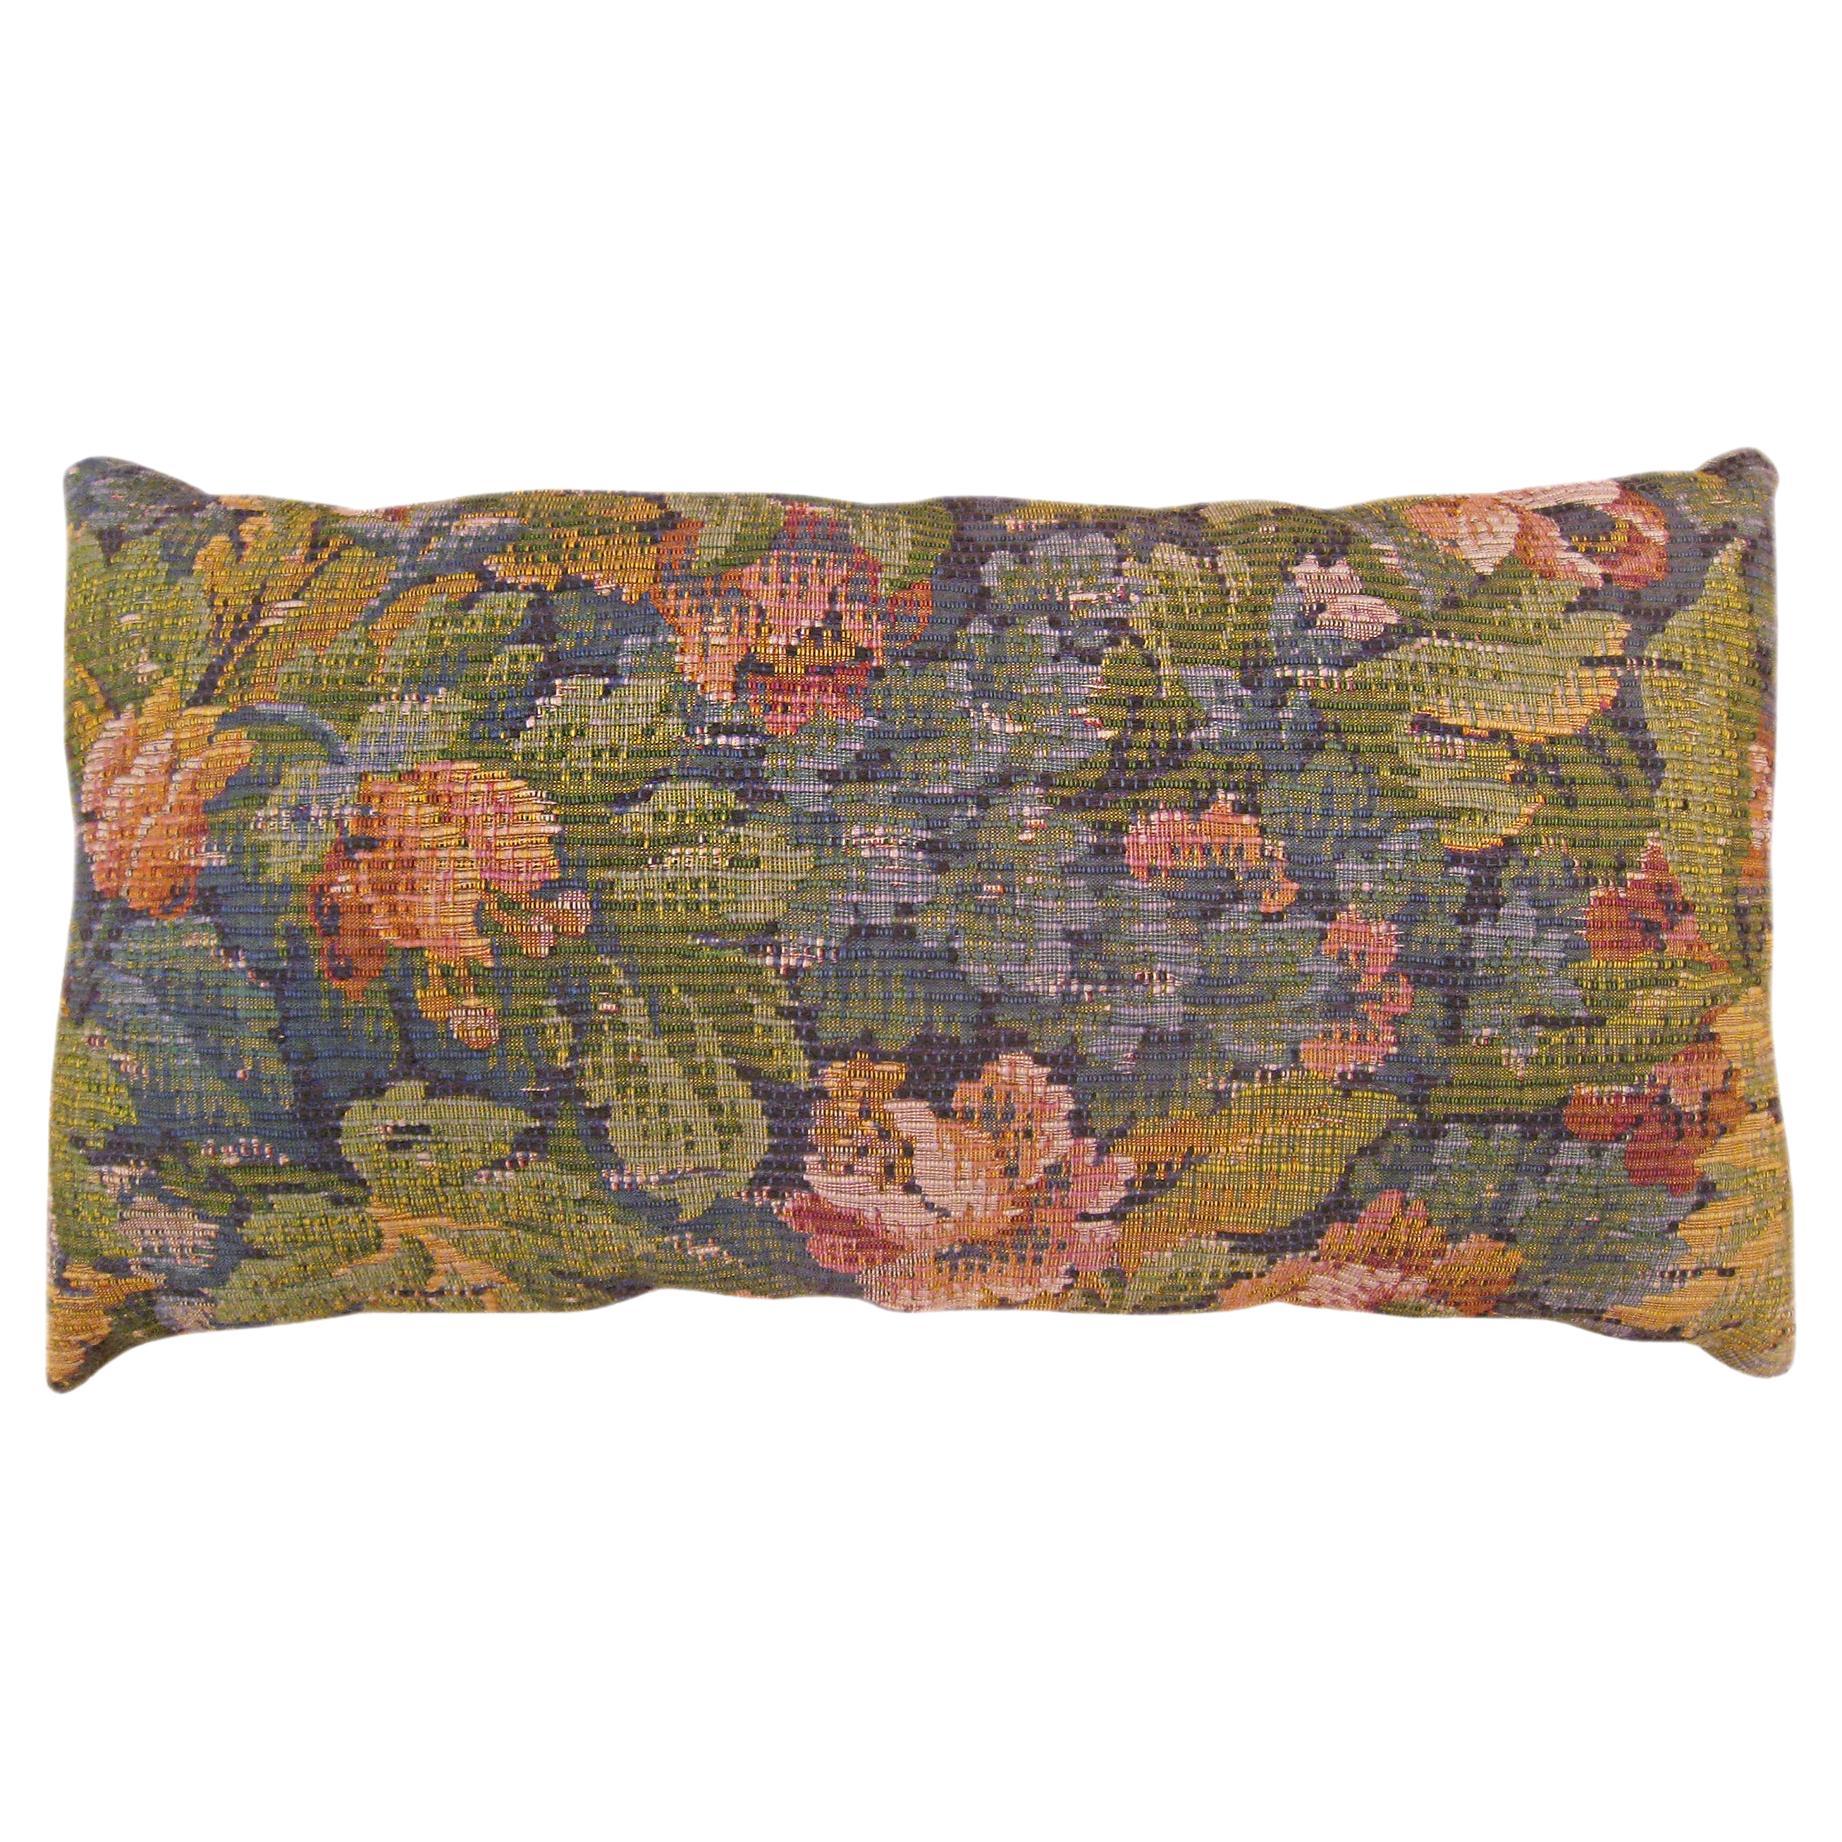 Coussin décoratif ancien en tapisserie jacquard avec éléments floraux sur toute sa surface